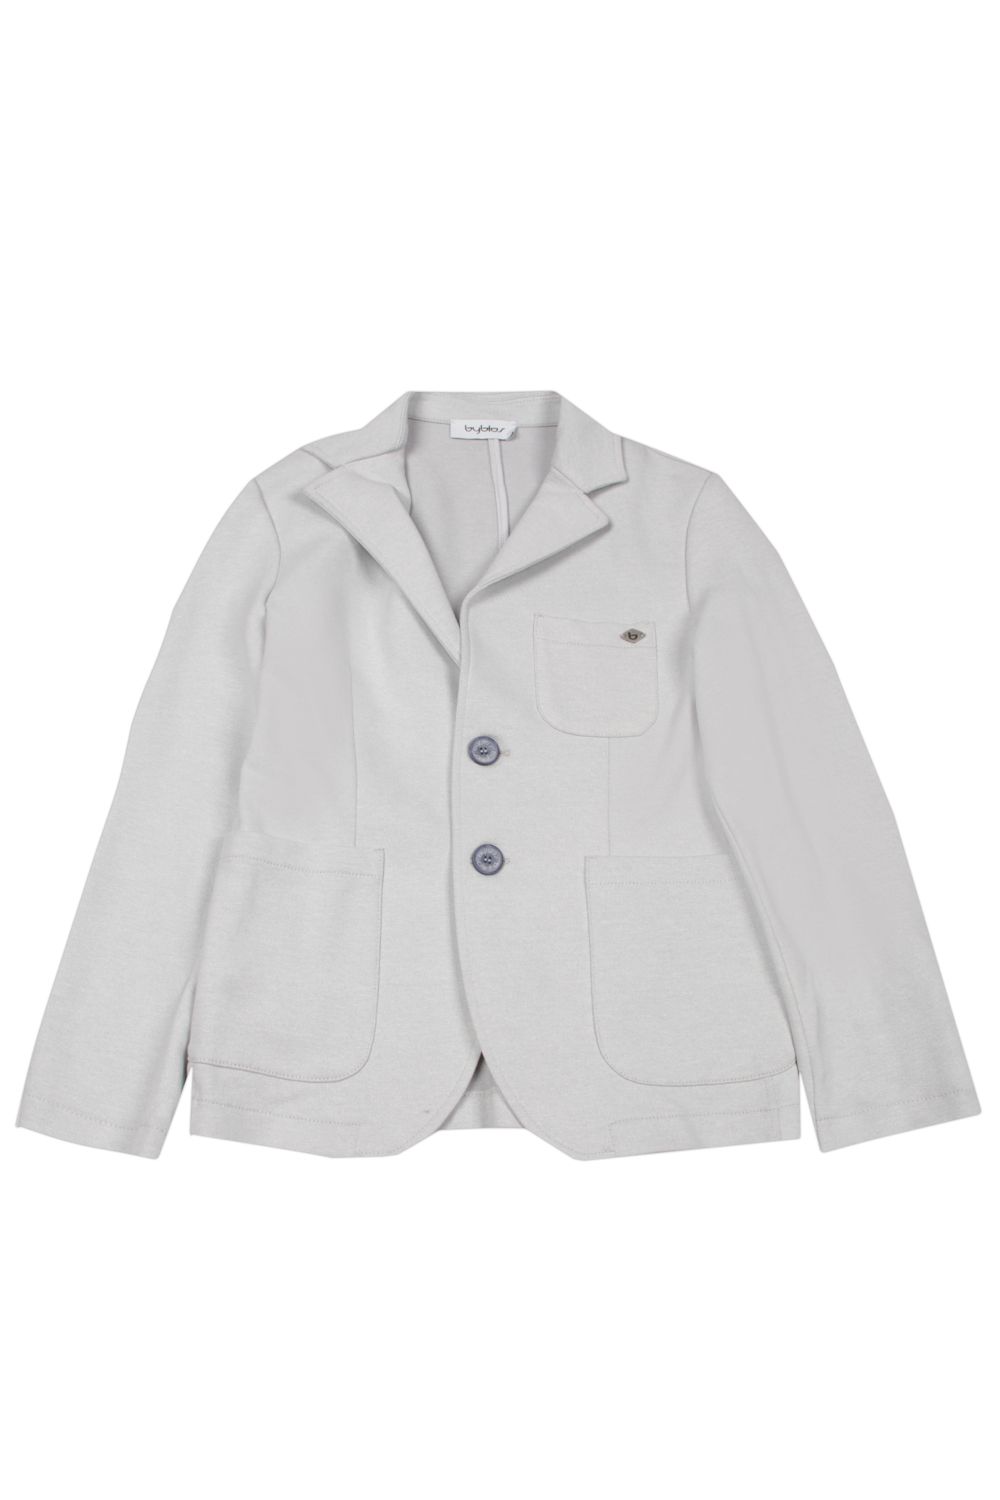 Пиджак Byblos, размер 128, цвет серый